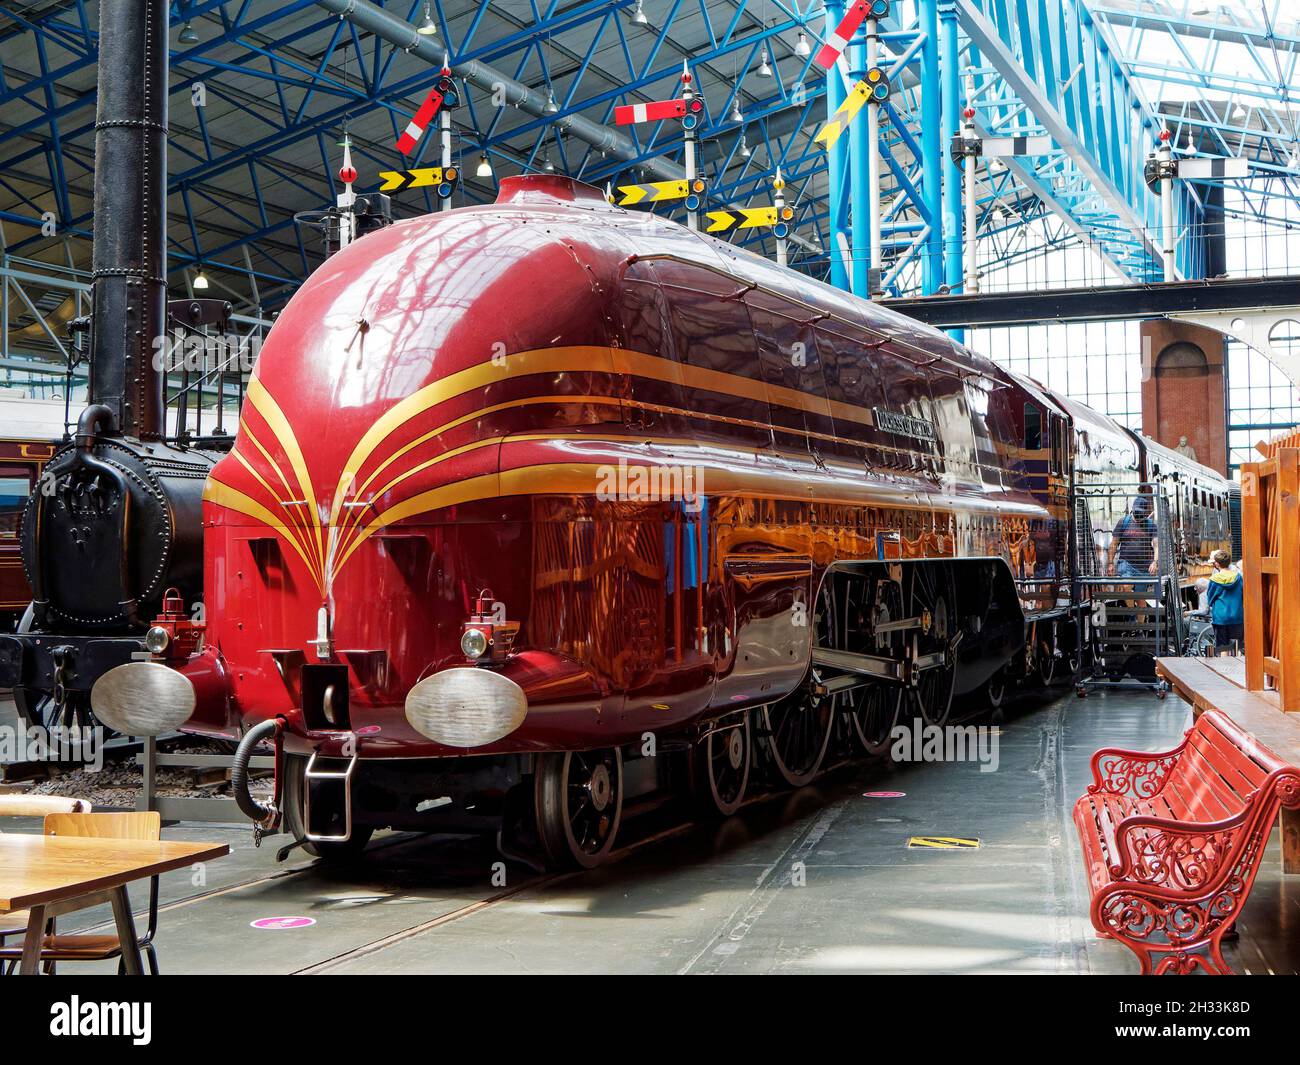 Steamline 'Duchess' classe Pacific Loco conçu par Stainier pour le LMS et maintenant partie de la collection du Musée national des chemins de fer à York. Banque D'Images